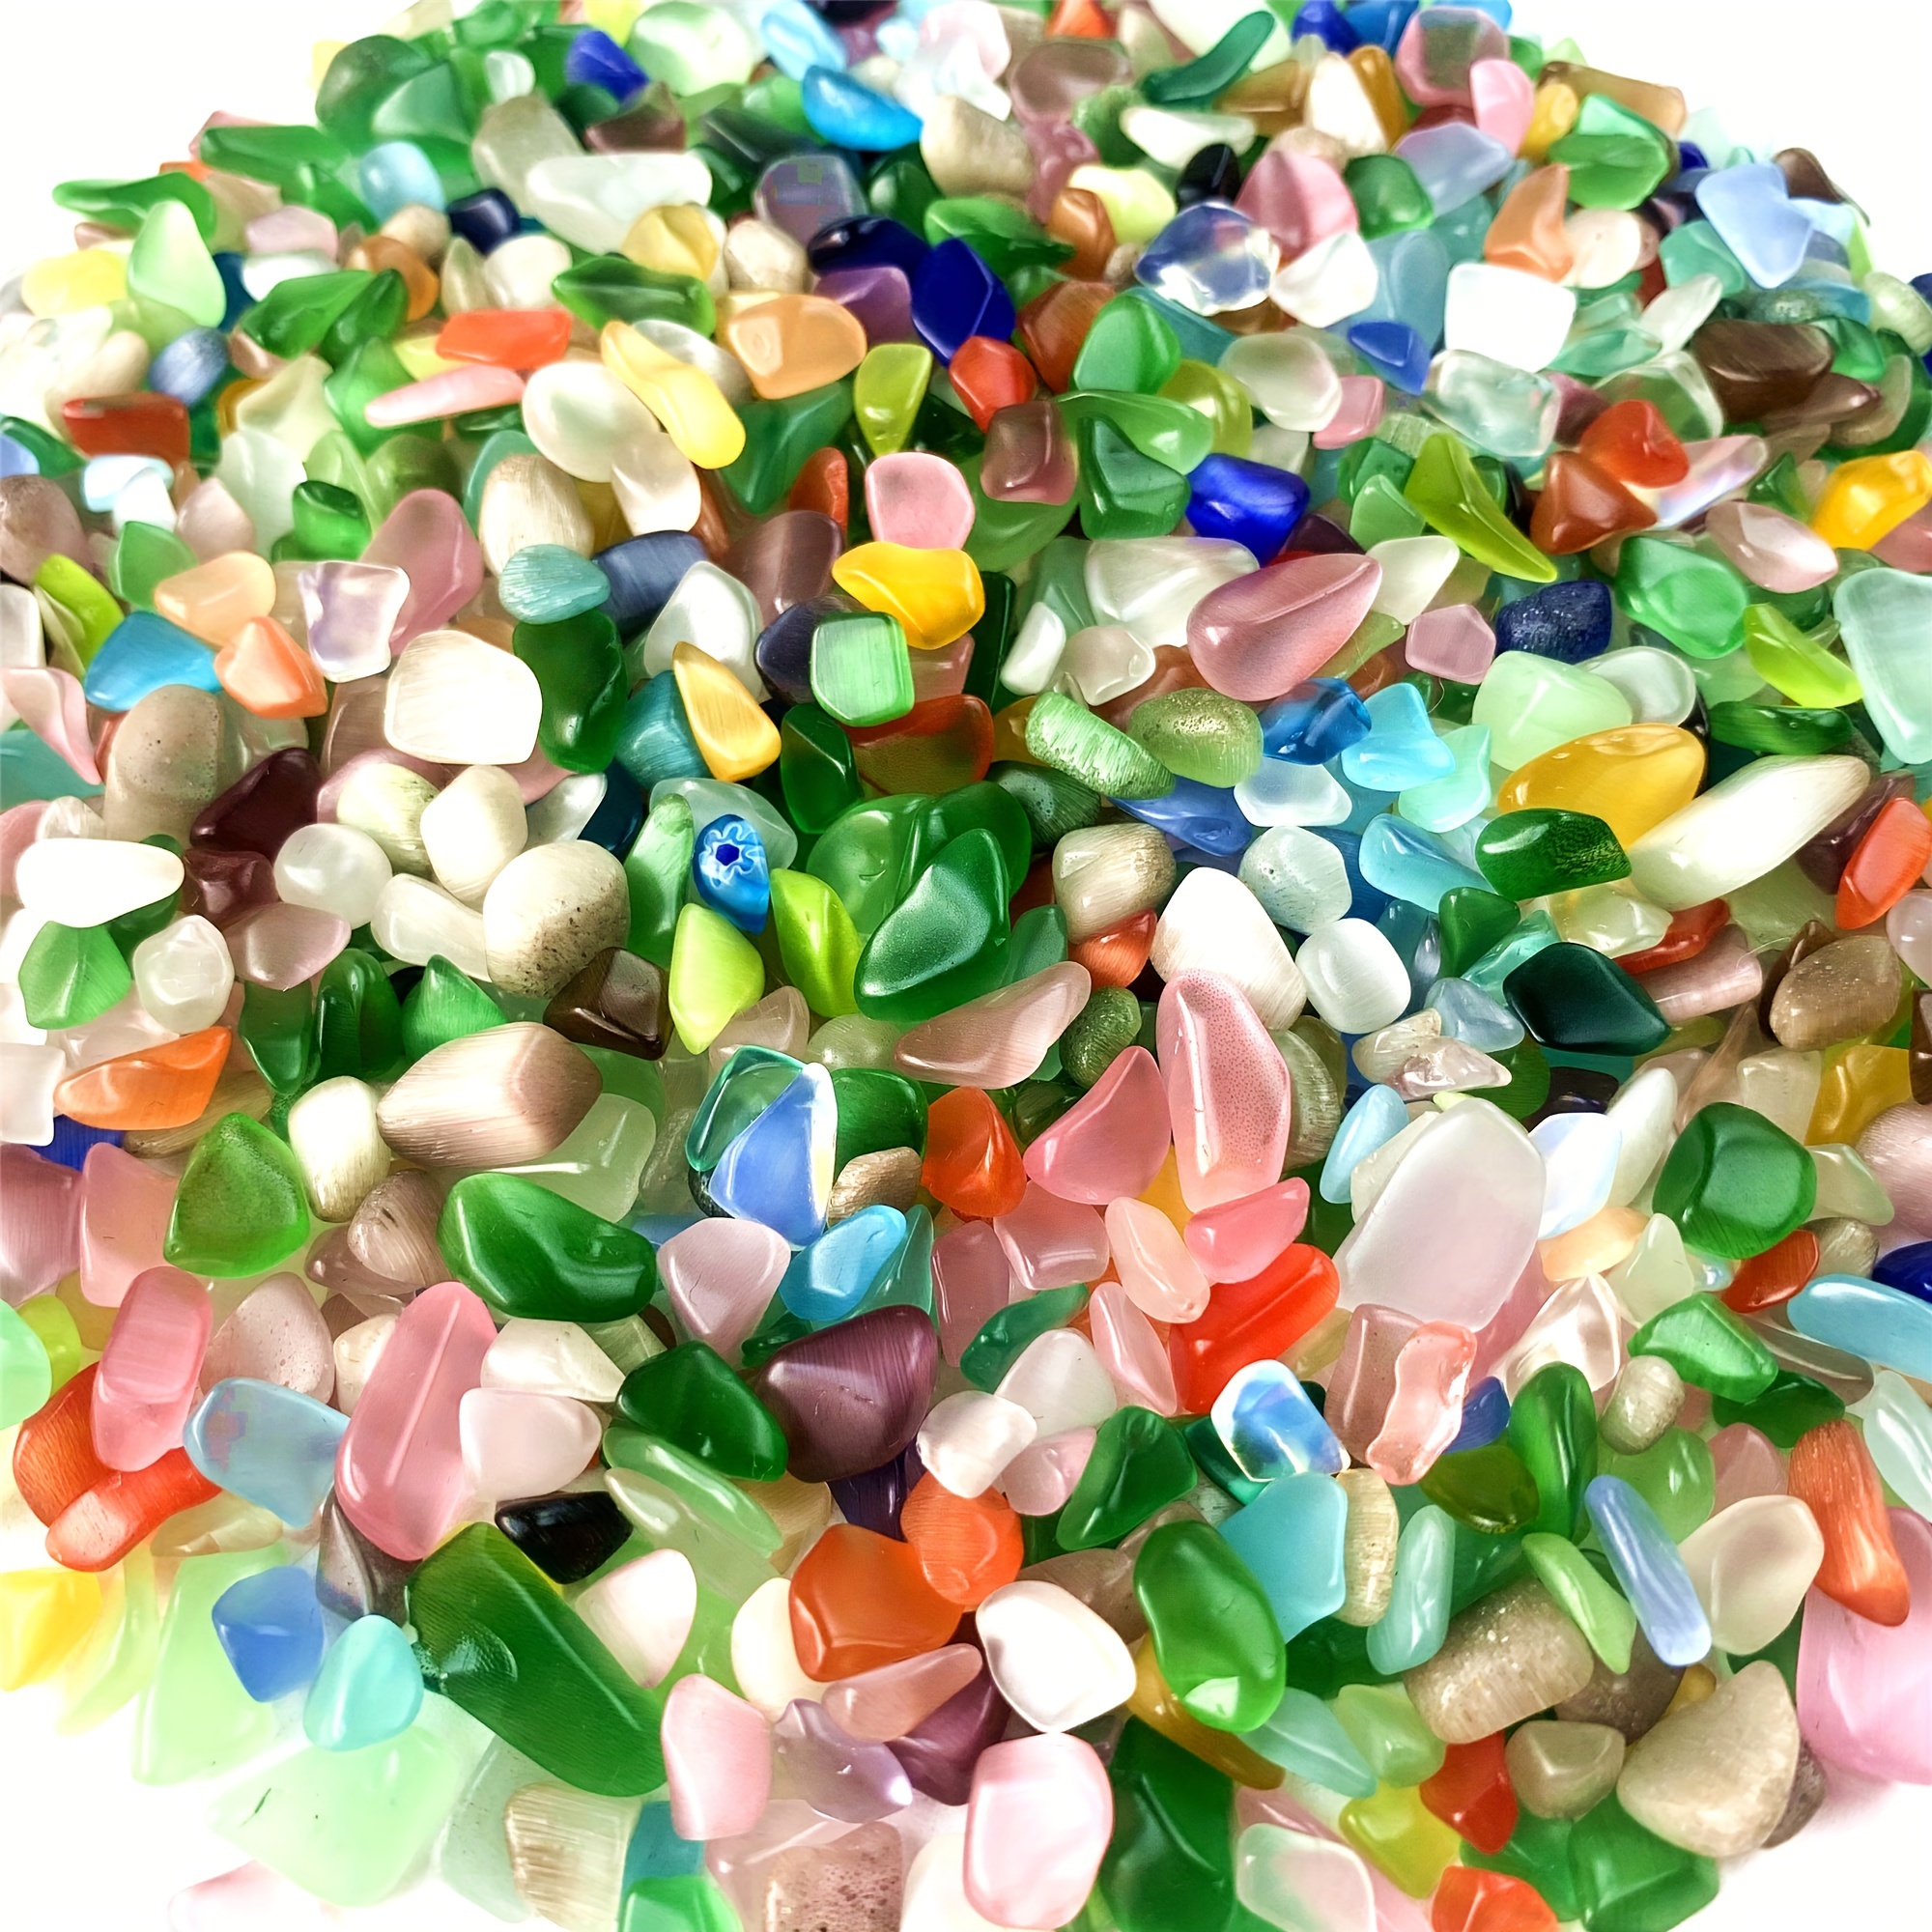 Green Assortment Small Glass Beads 2oz (60+)